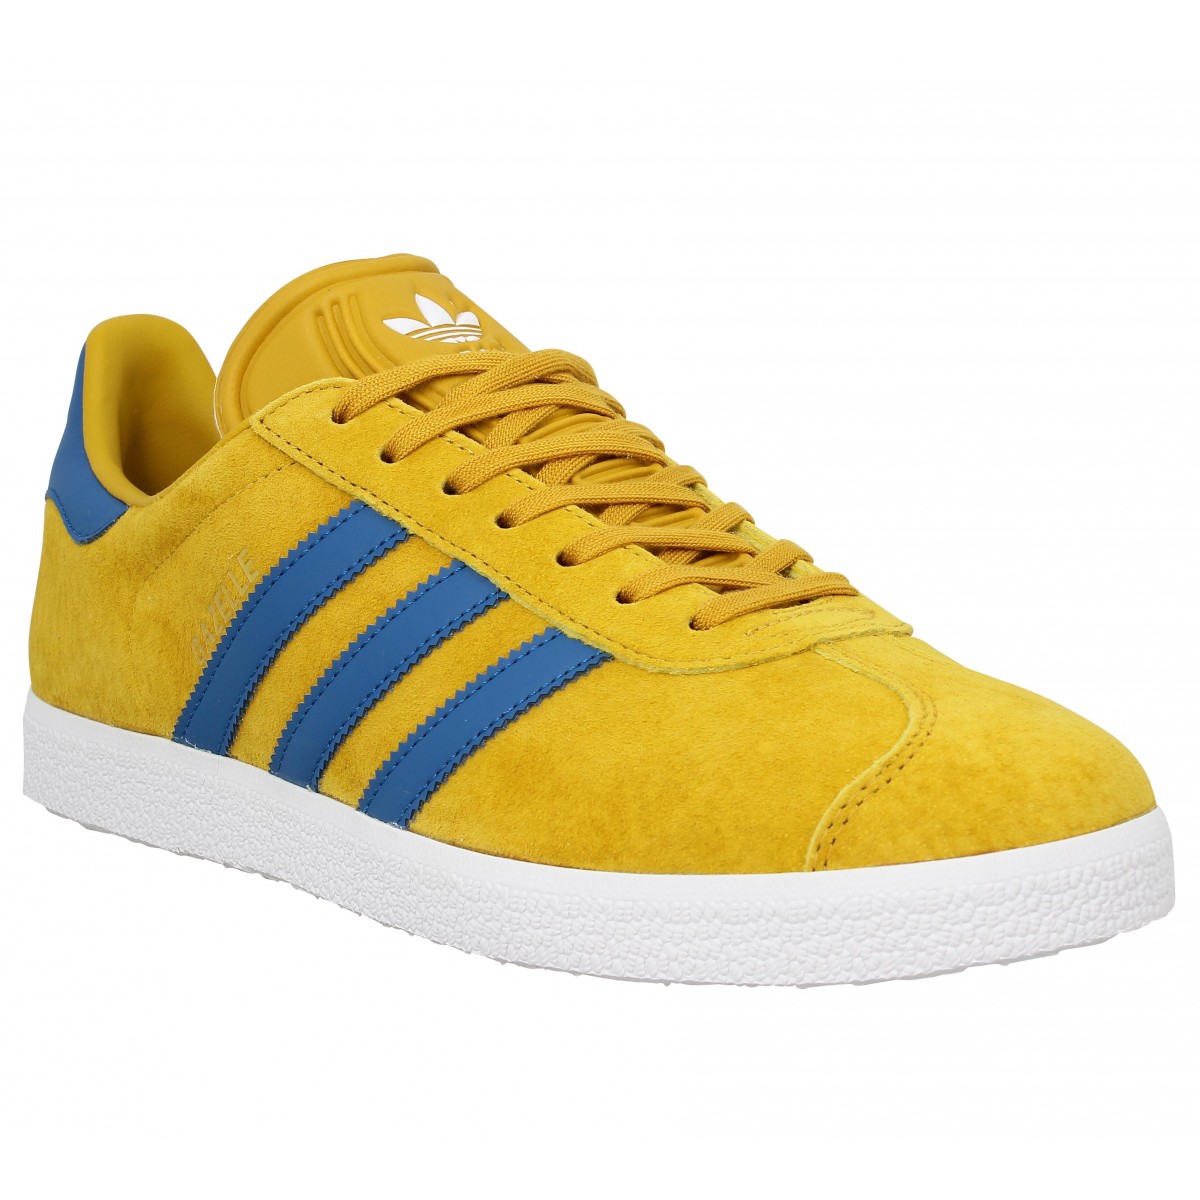 adidas gazelle jaune et bleu